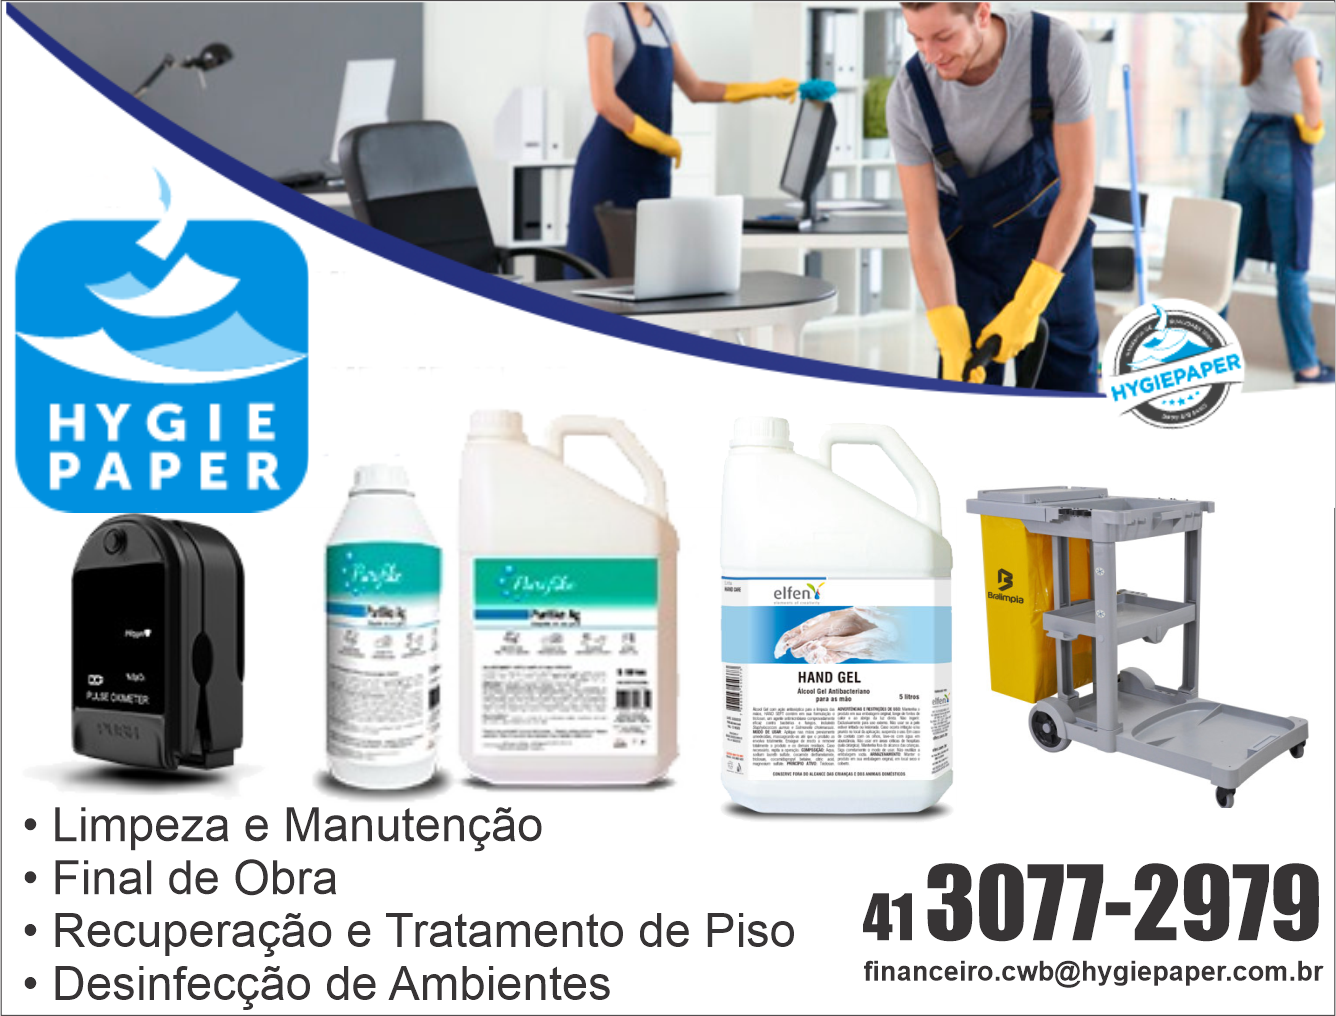 Hygie Corp Especializada em Produtos e Serviços de Limpeza Profissional      Fones: (41)3077-2979 /